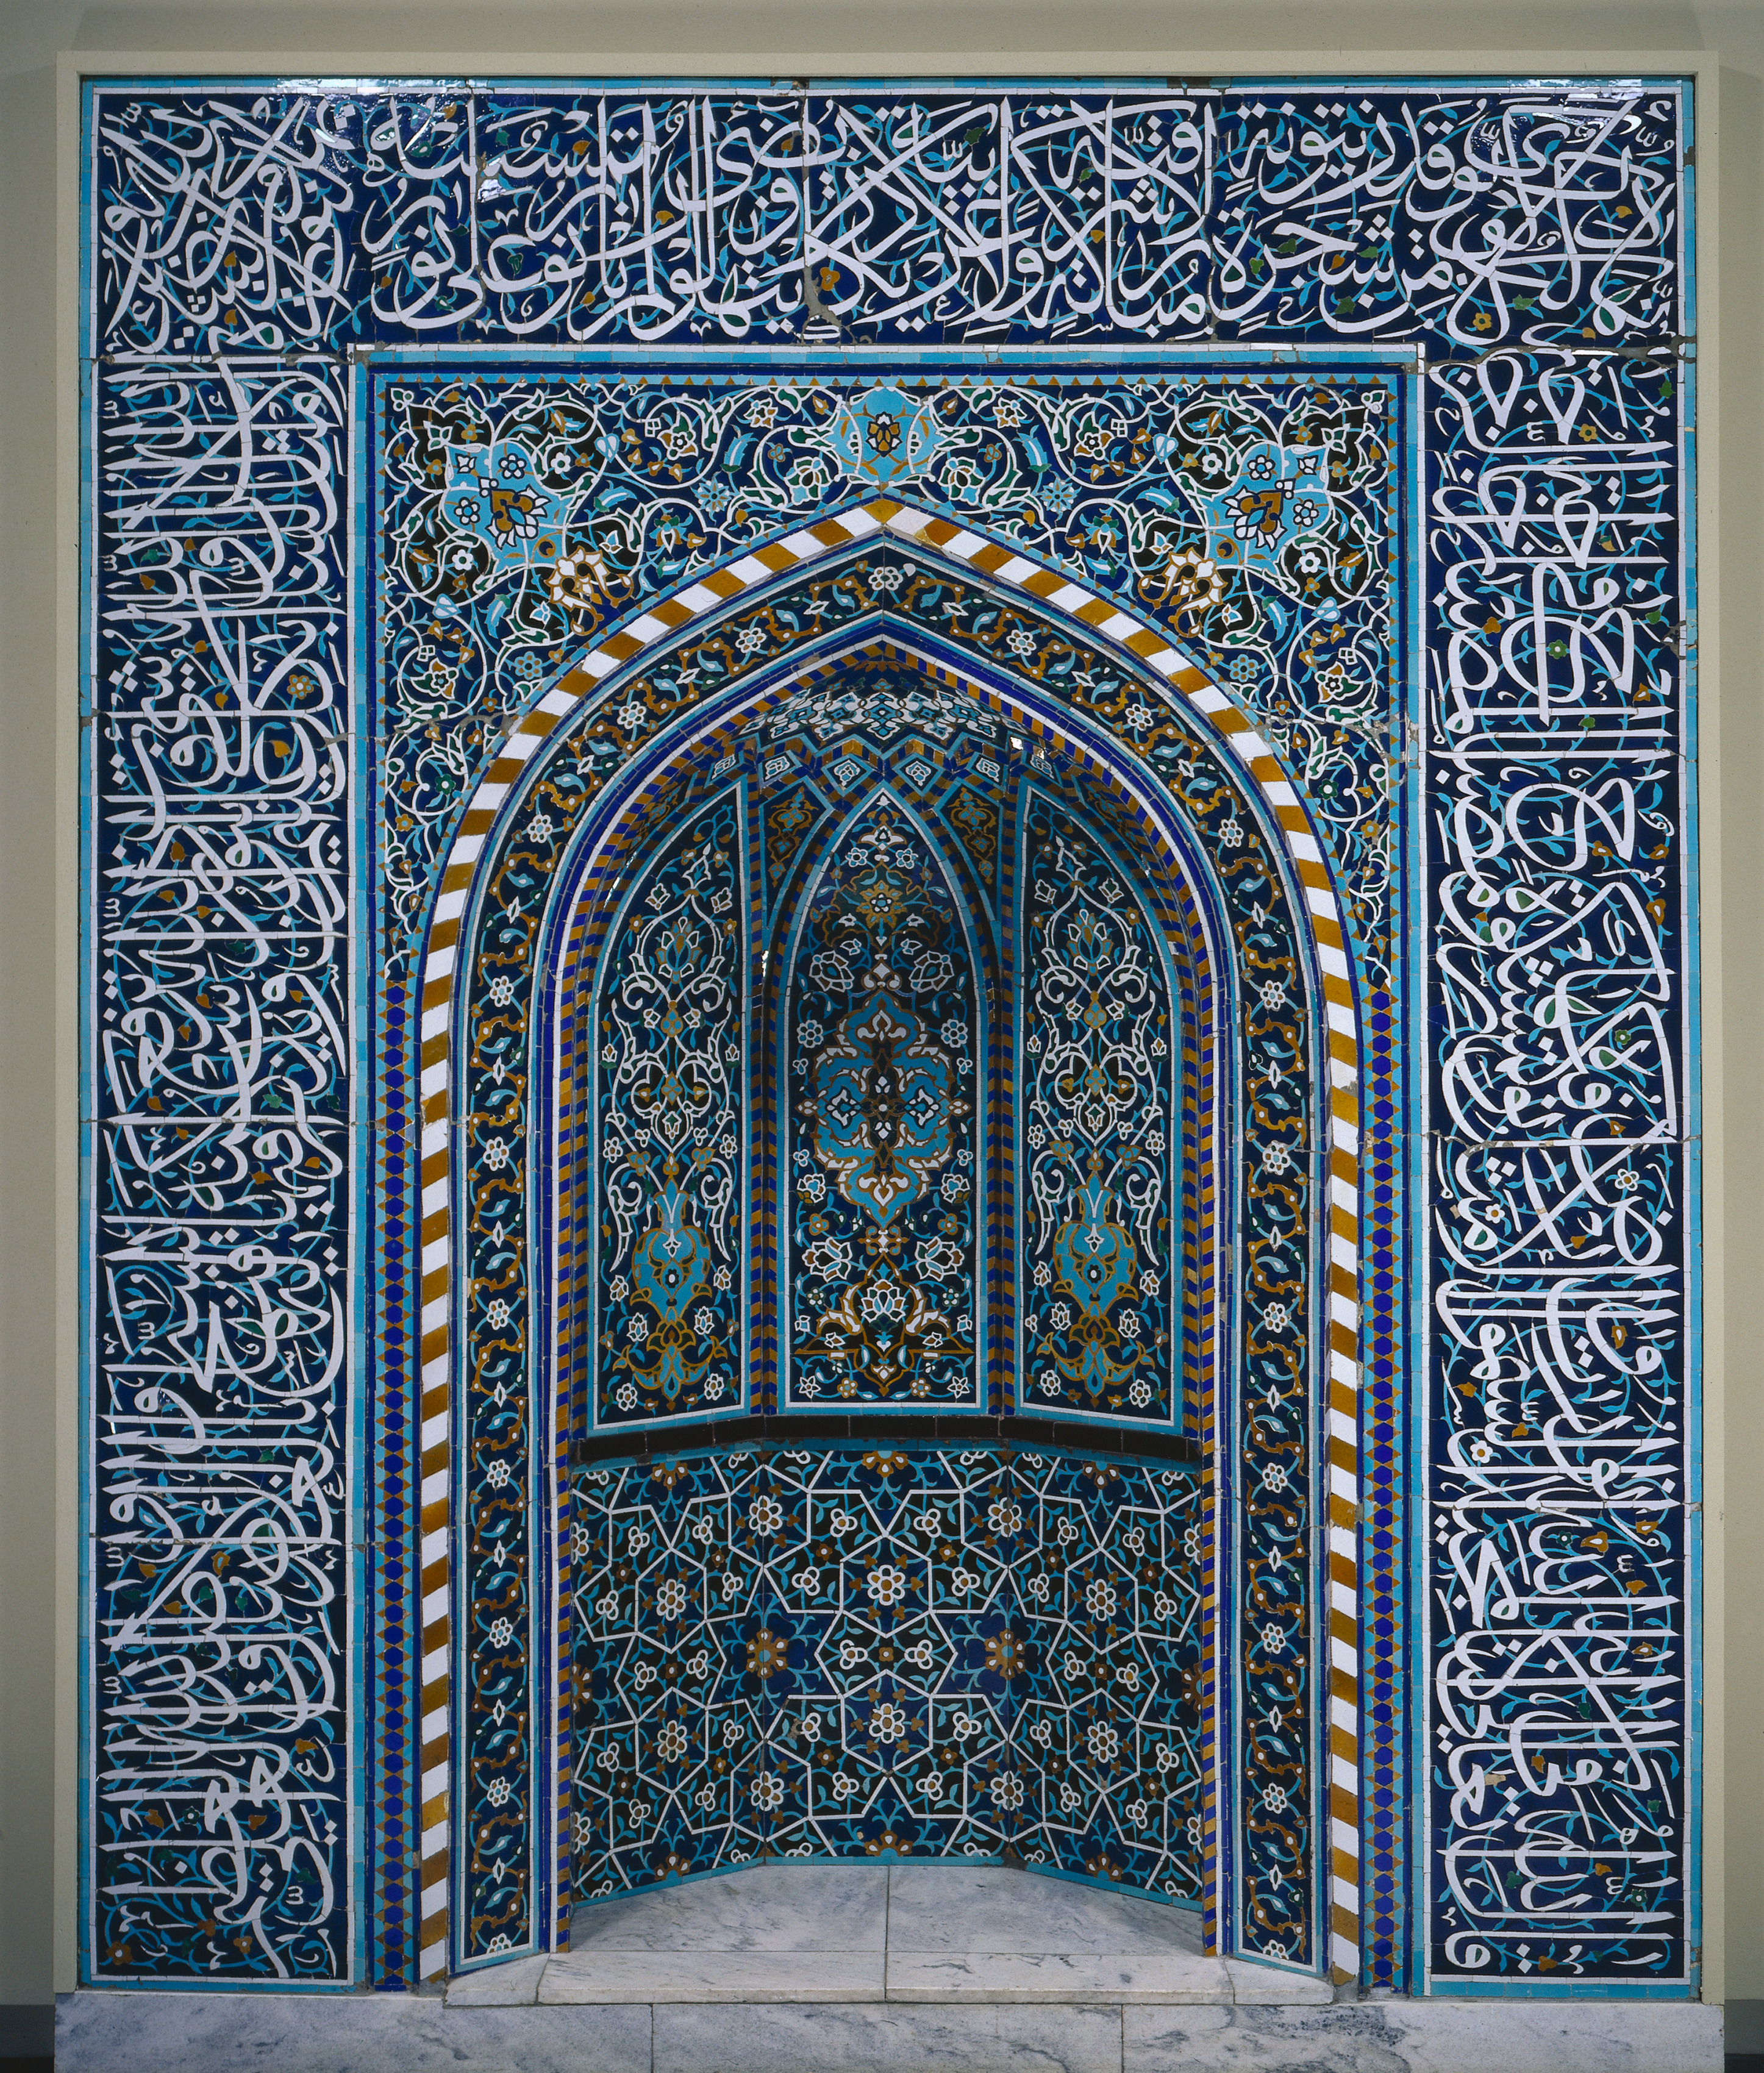 Prayer Niche (Mihrab) by Unknown Artist - 1600s - 290.7 x 245.3 cm Cleveland Museum of Art